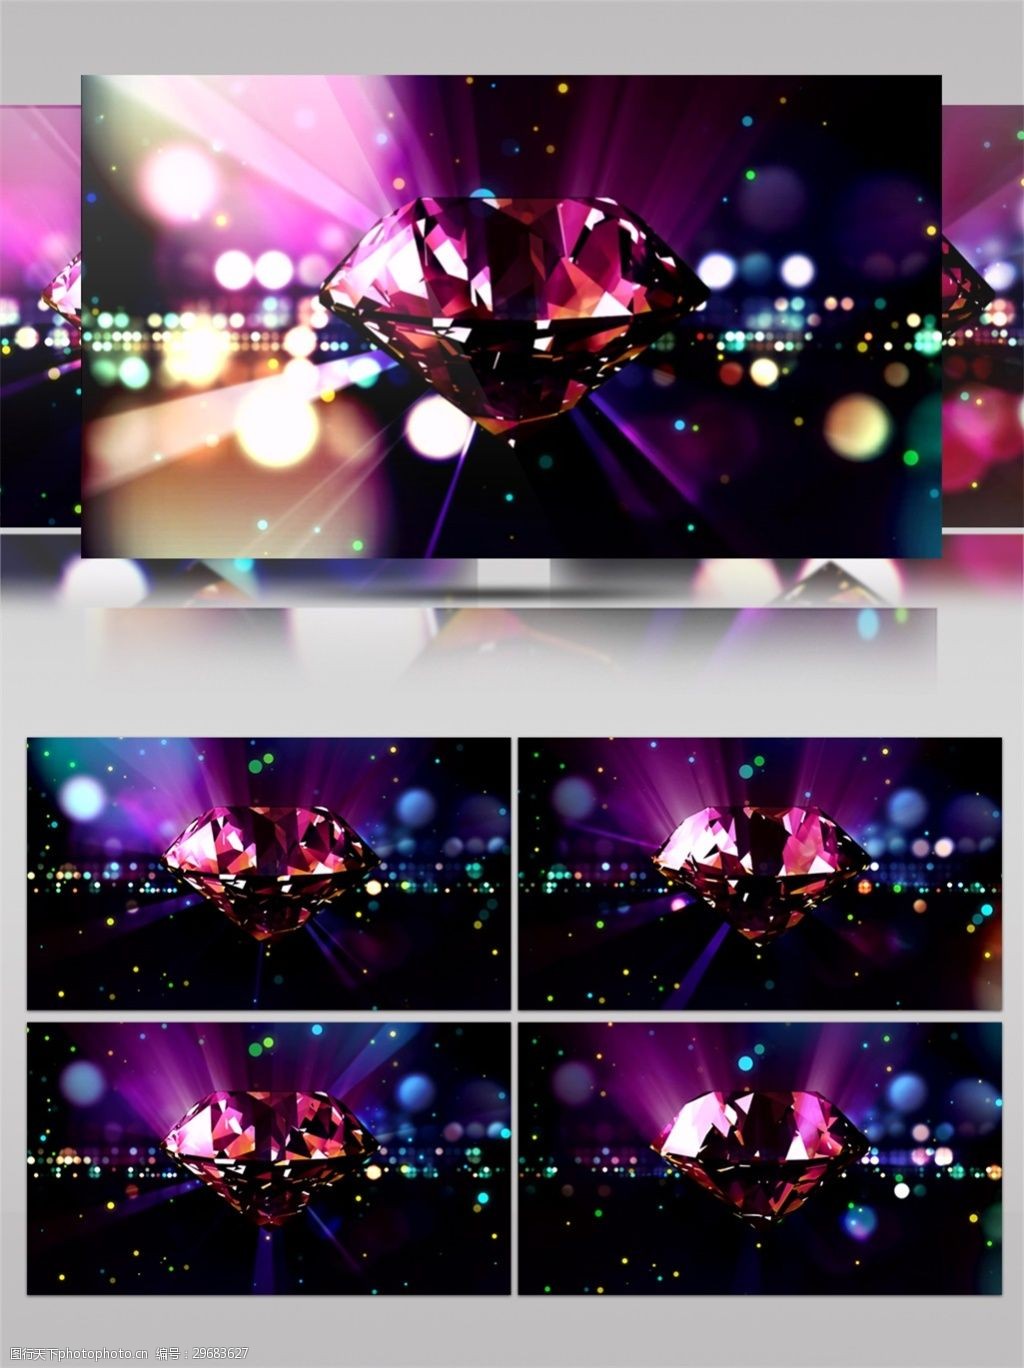 关键词:led闪烁灯光 激光 梦幻 唯美背景素材 舞台背景素材 紫色 紫色